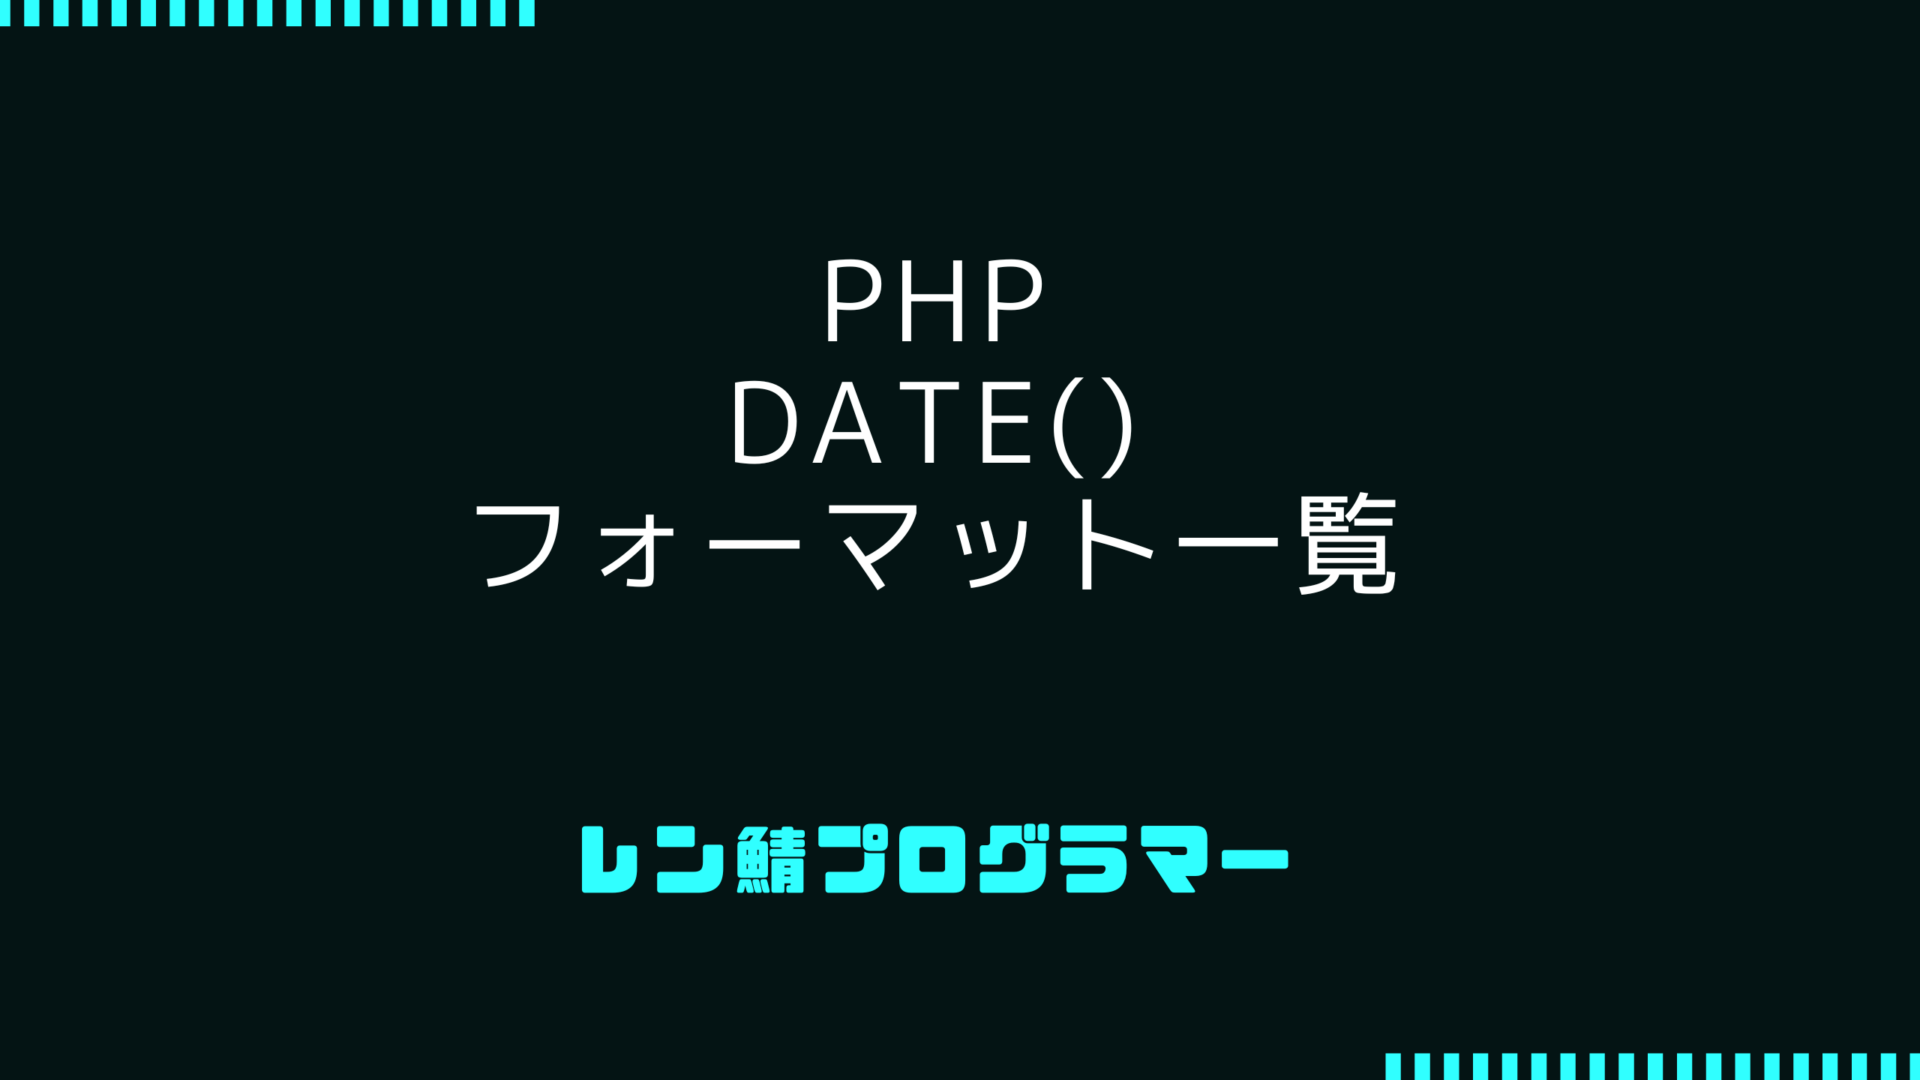 PHPでのdate()フォーマット指定子一覧 | 使い方とサンプルコード